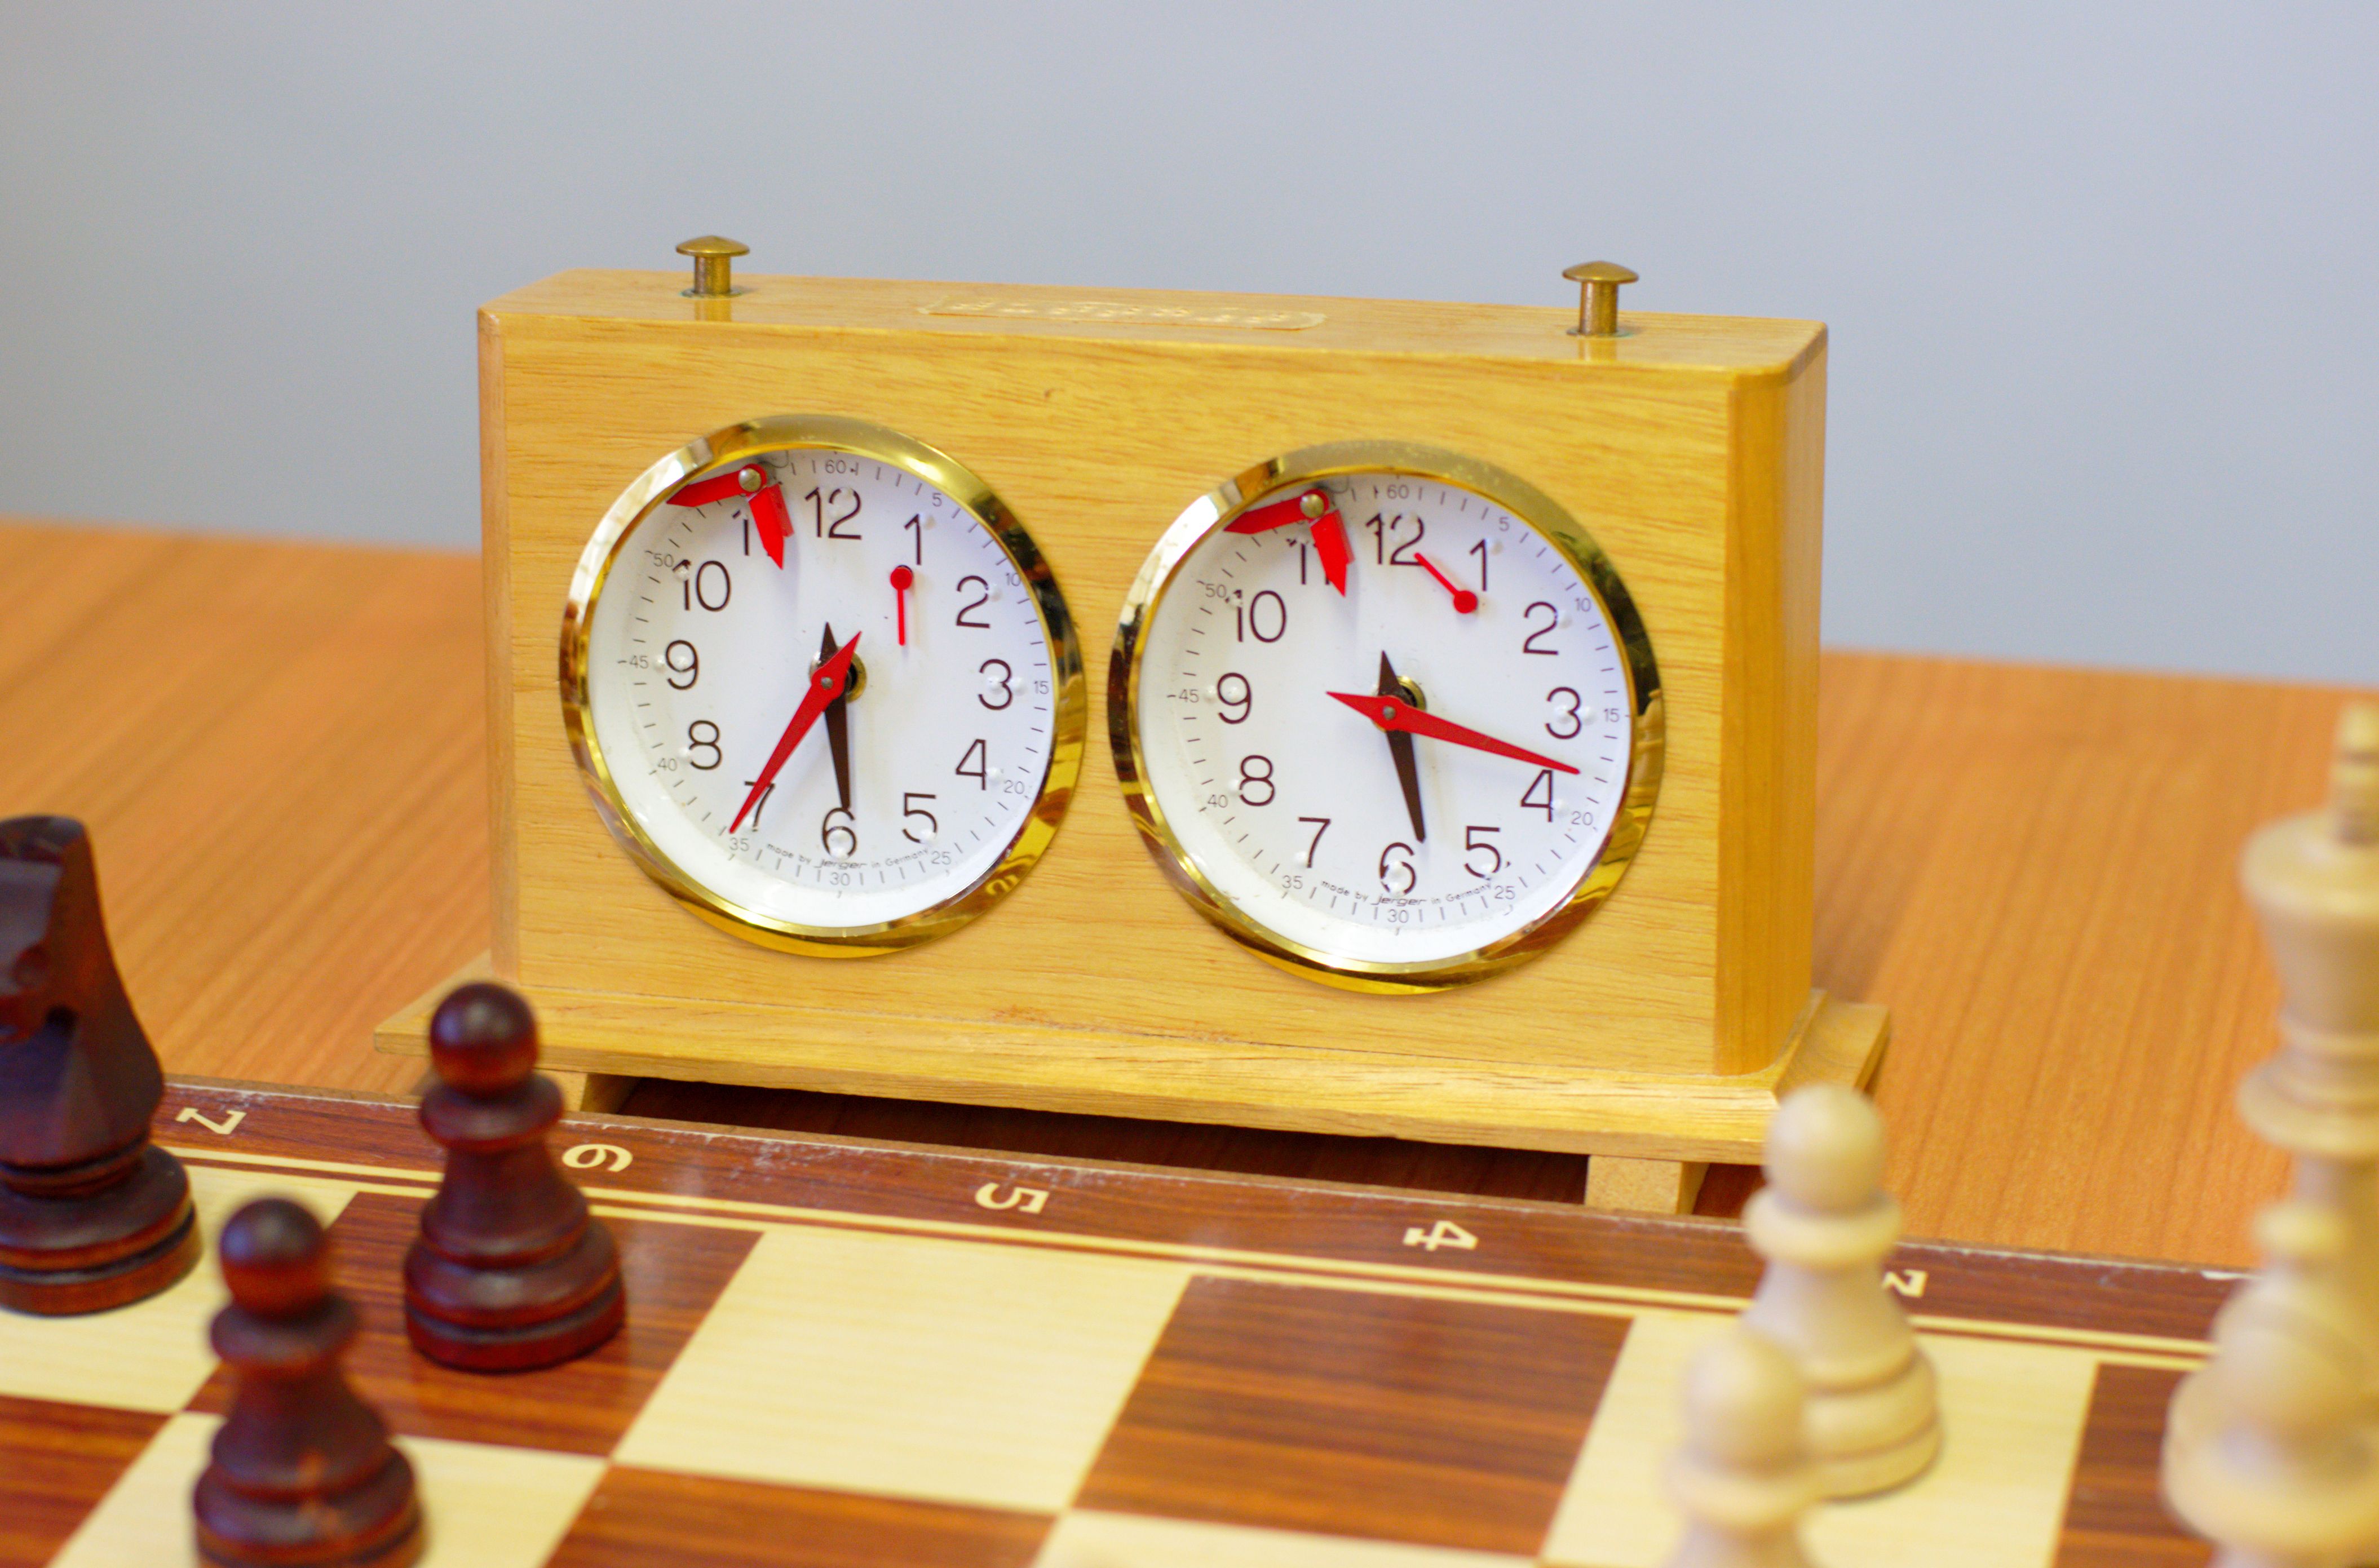 Relógio de xadrez mecânico para relógio temporizador de jogo de xadrez não  é necessário bateria